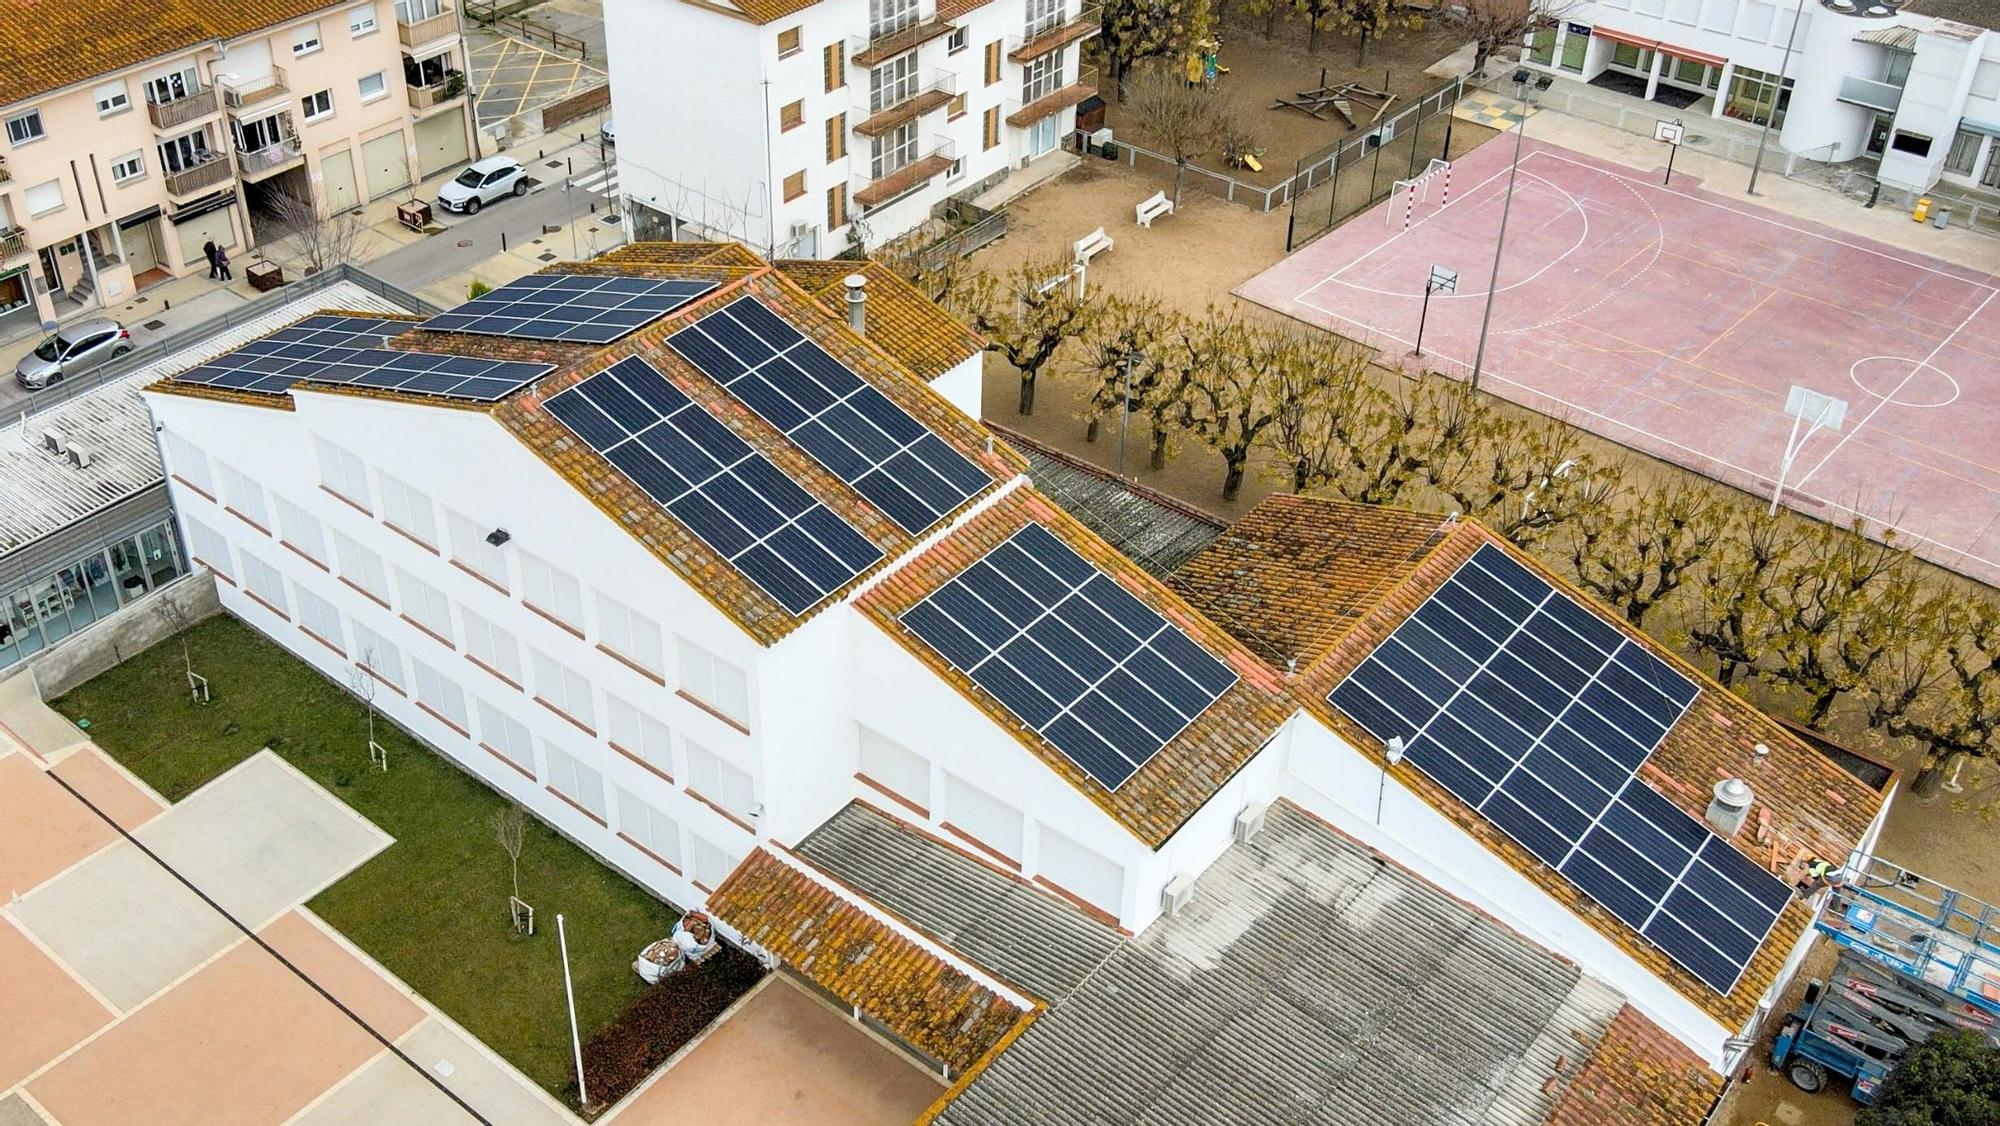 PIE: Instalación solar en el techo del colegio de Cornellà del Terri, que alimenta la comunidad energética de autoconsumo compartido del pueblo. energias renovables placas solares CRÉDITO: Ajuntament de Cornellà del Terri